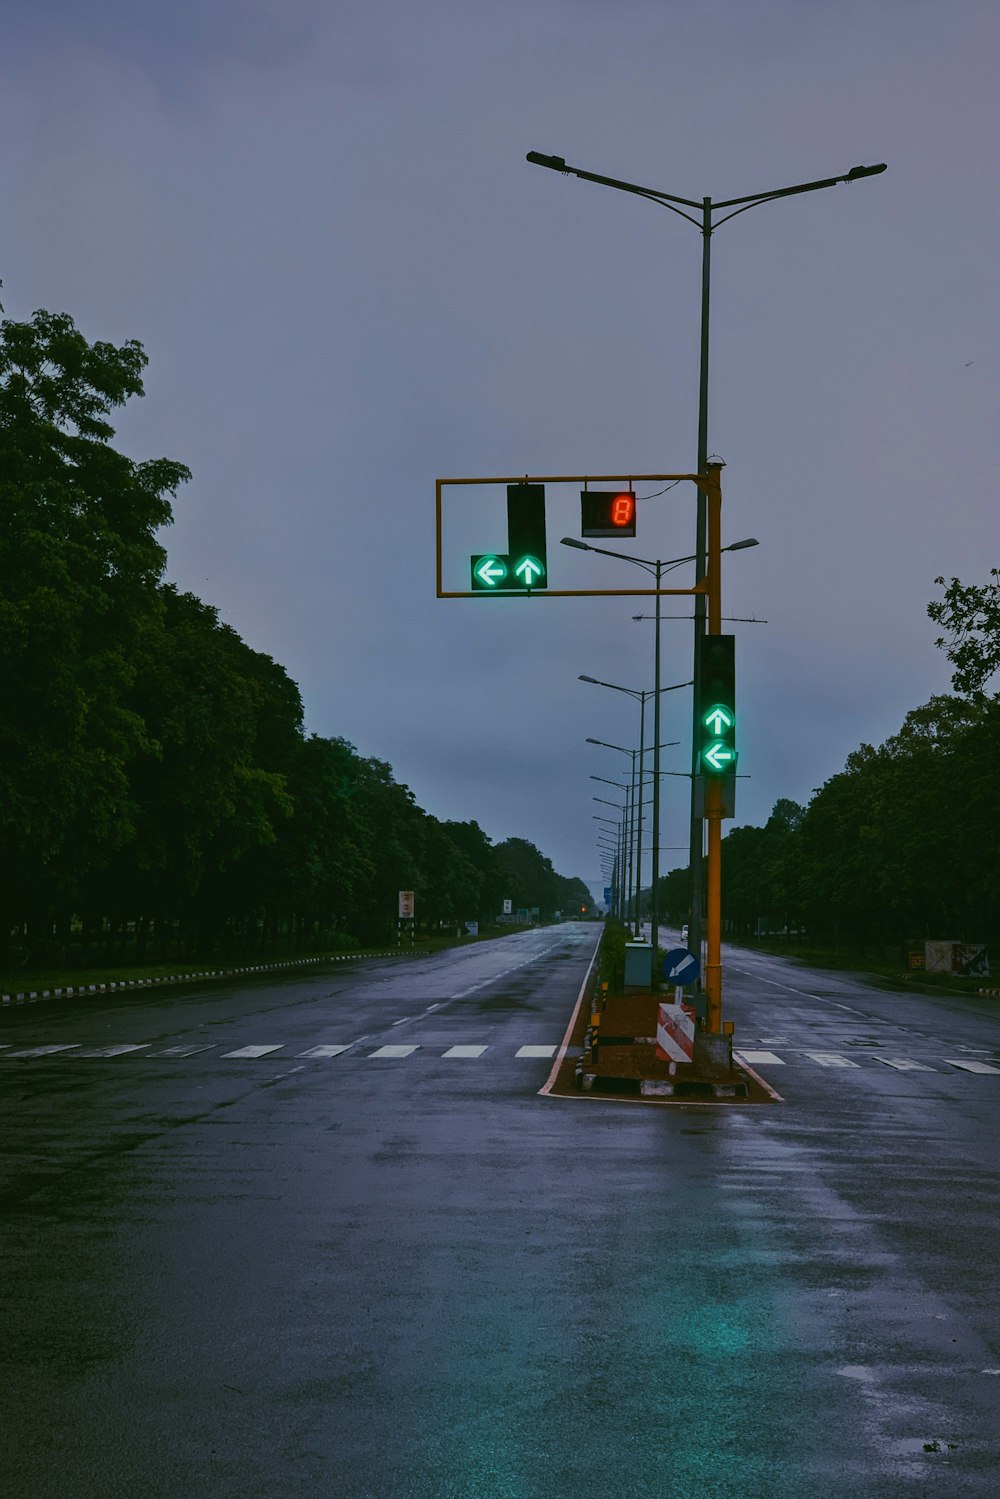 Semáforo verde en carretera asfaltada gris